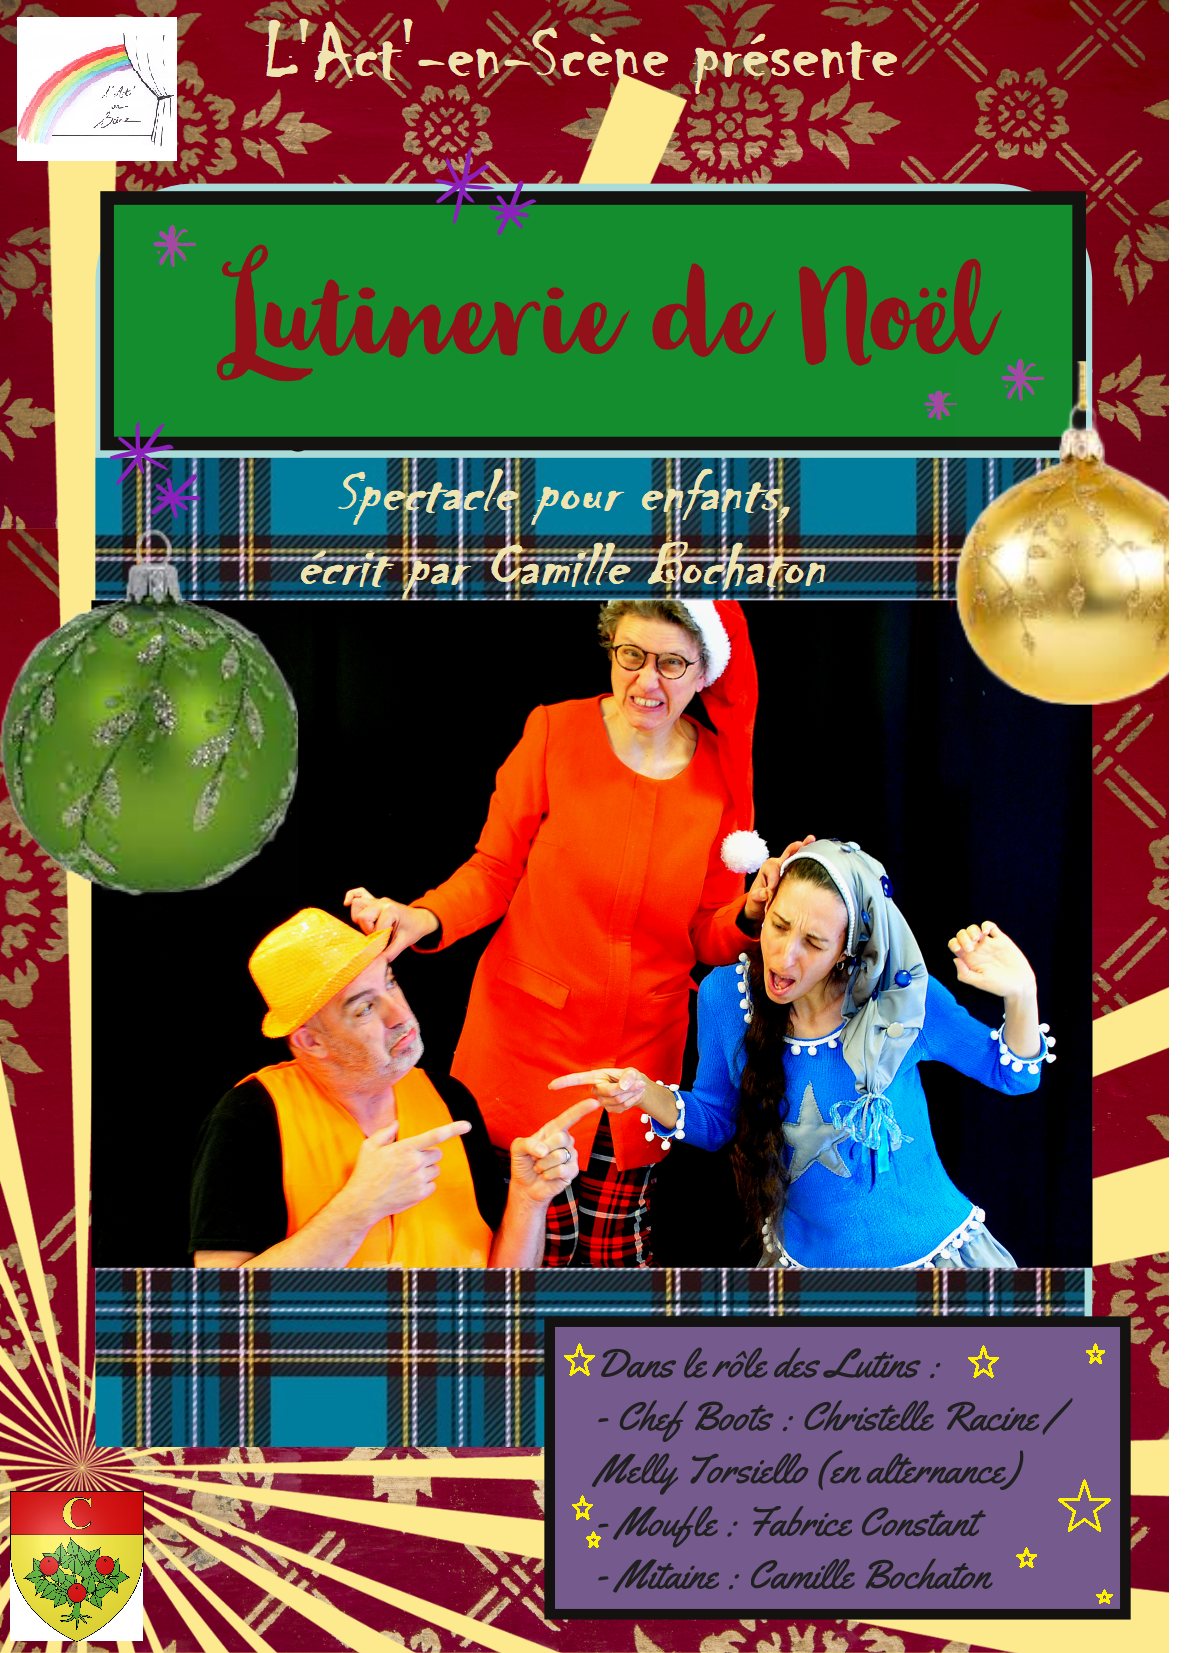 Pièce de théâtre de la troupe de L'Act'-en-Scène « Lutinerie de Noël » le vendredi 16 décembre à 17h30 à la Salle René Roussière